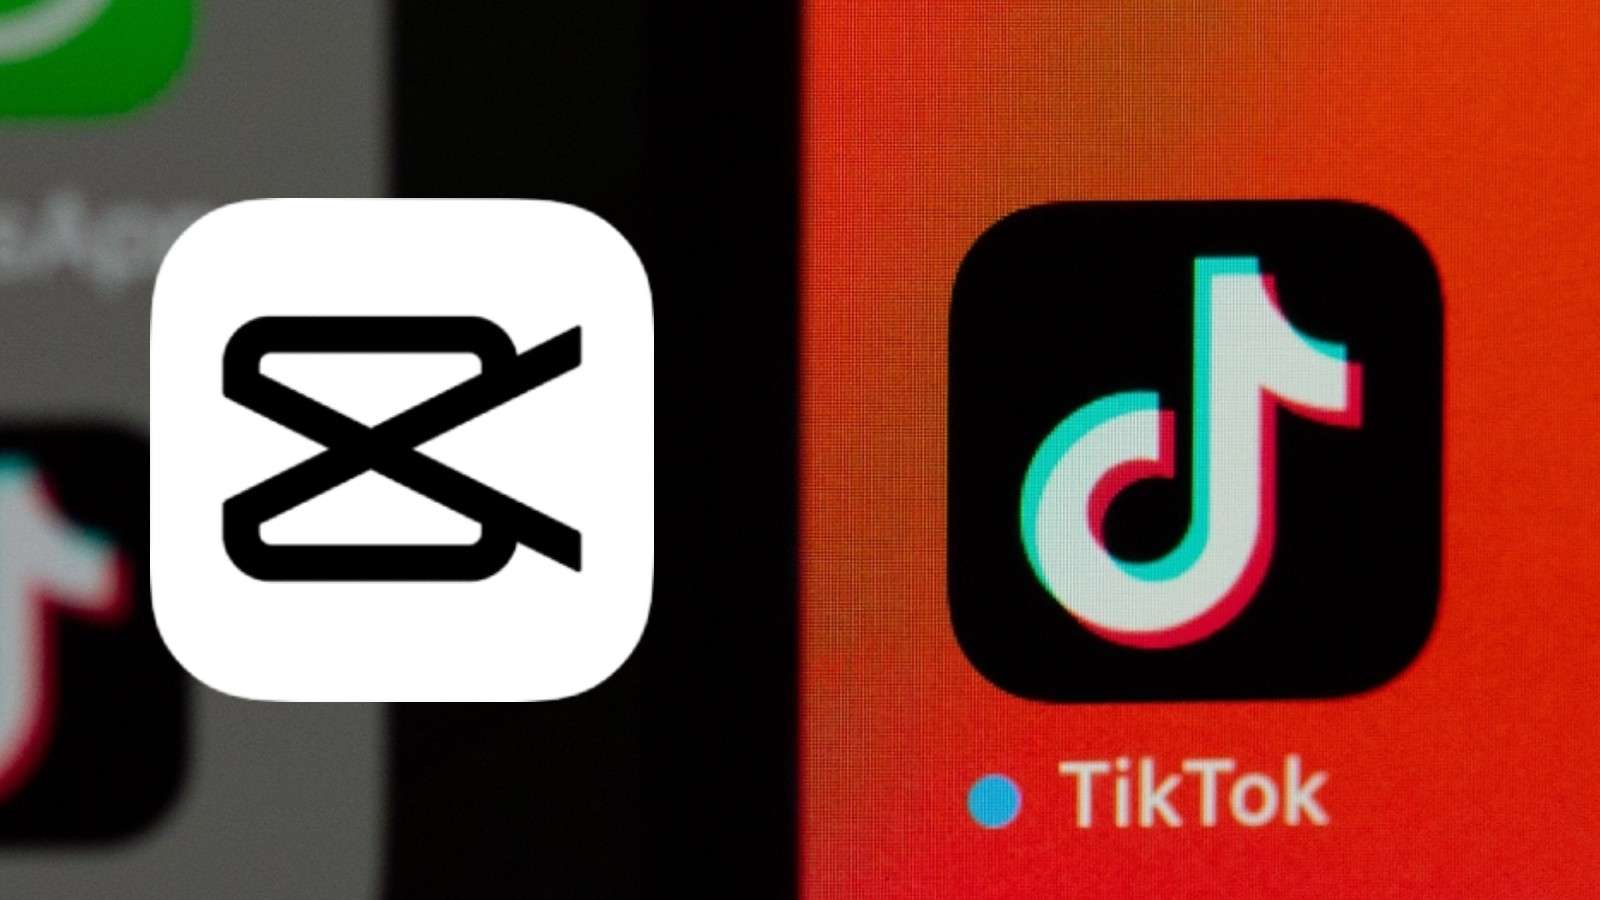 CapCut logo next to the TikTok logo